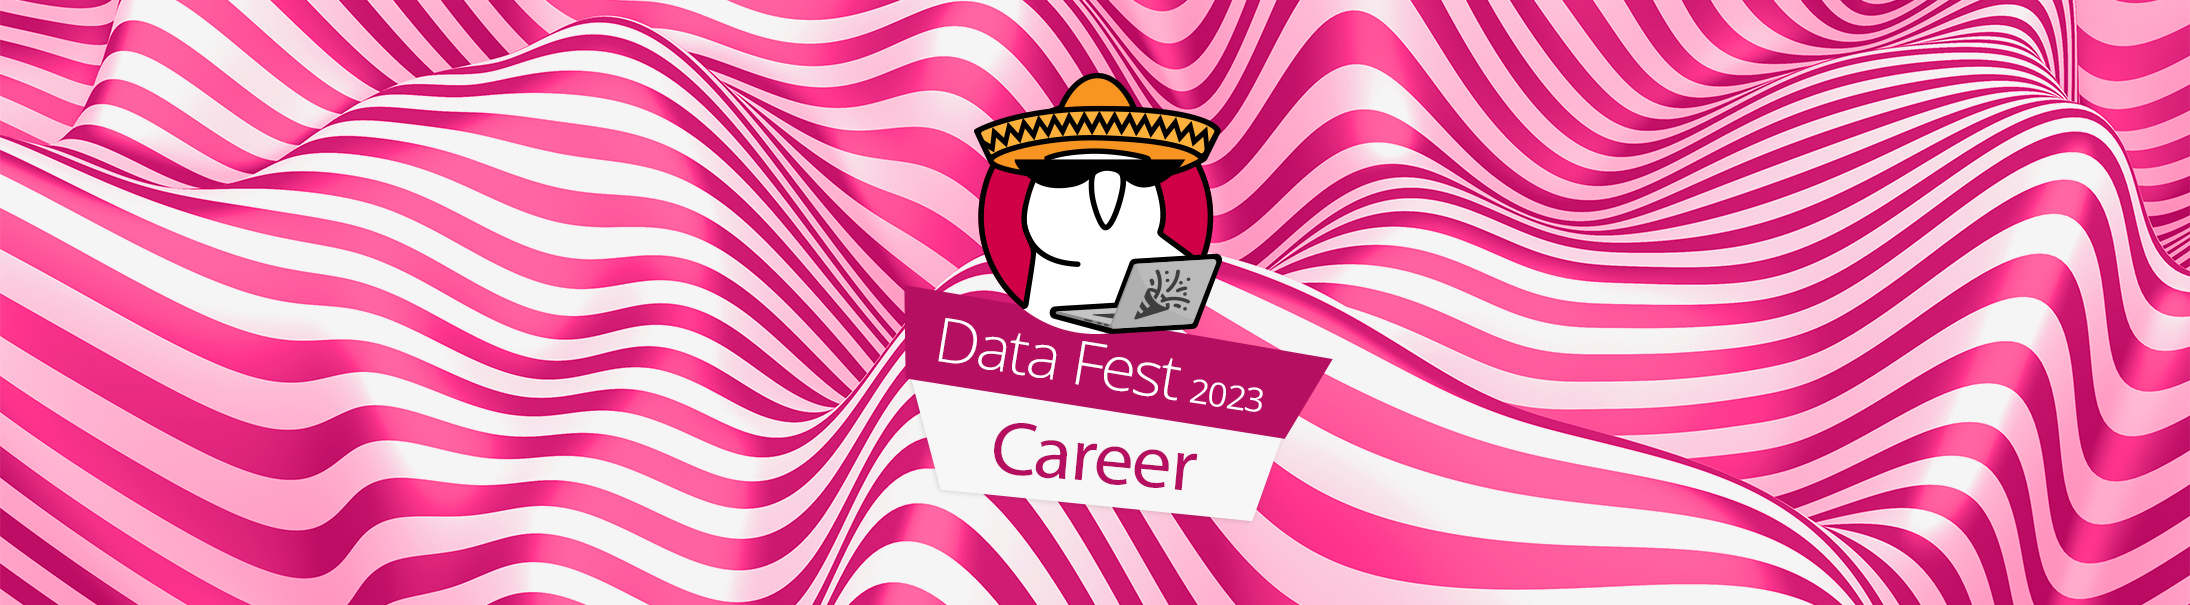 Career (Data Fest 2023)